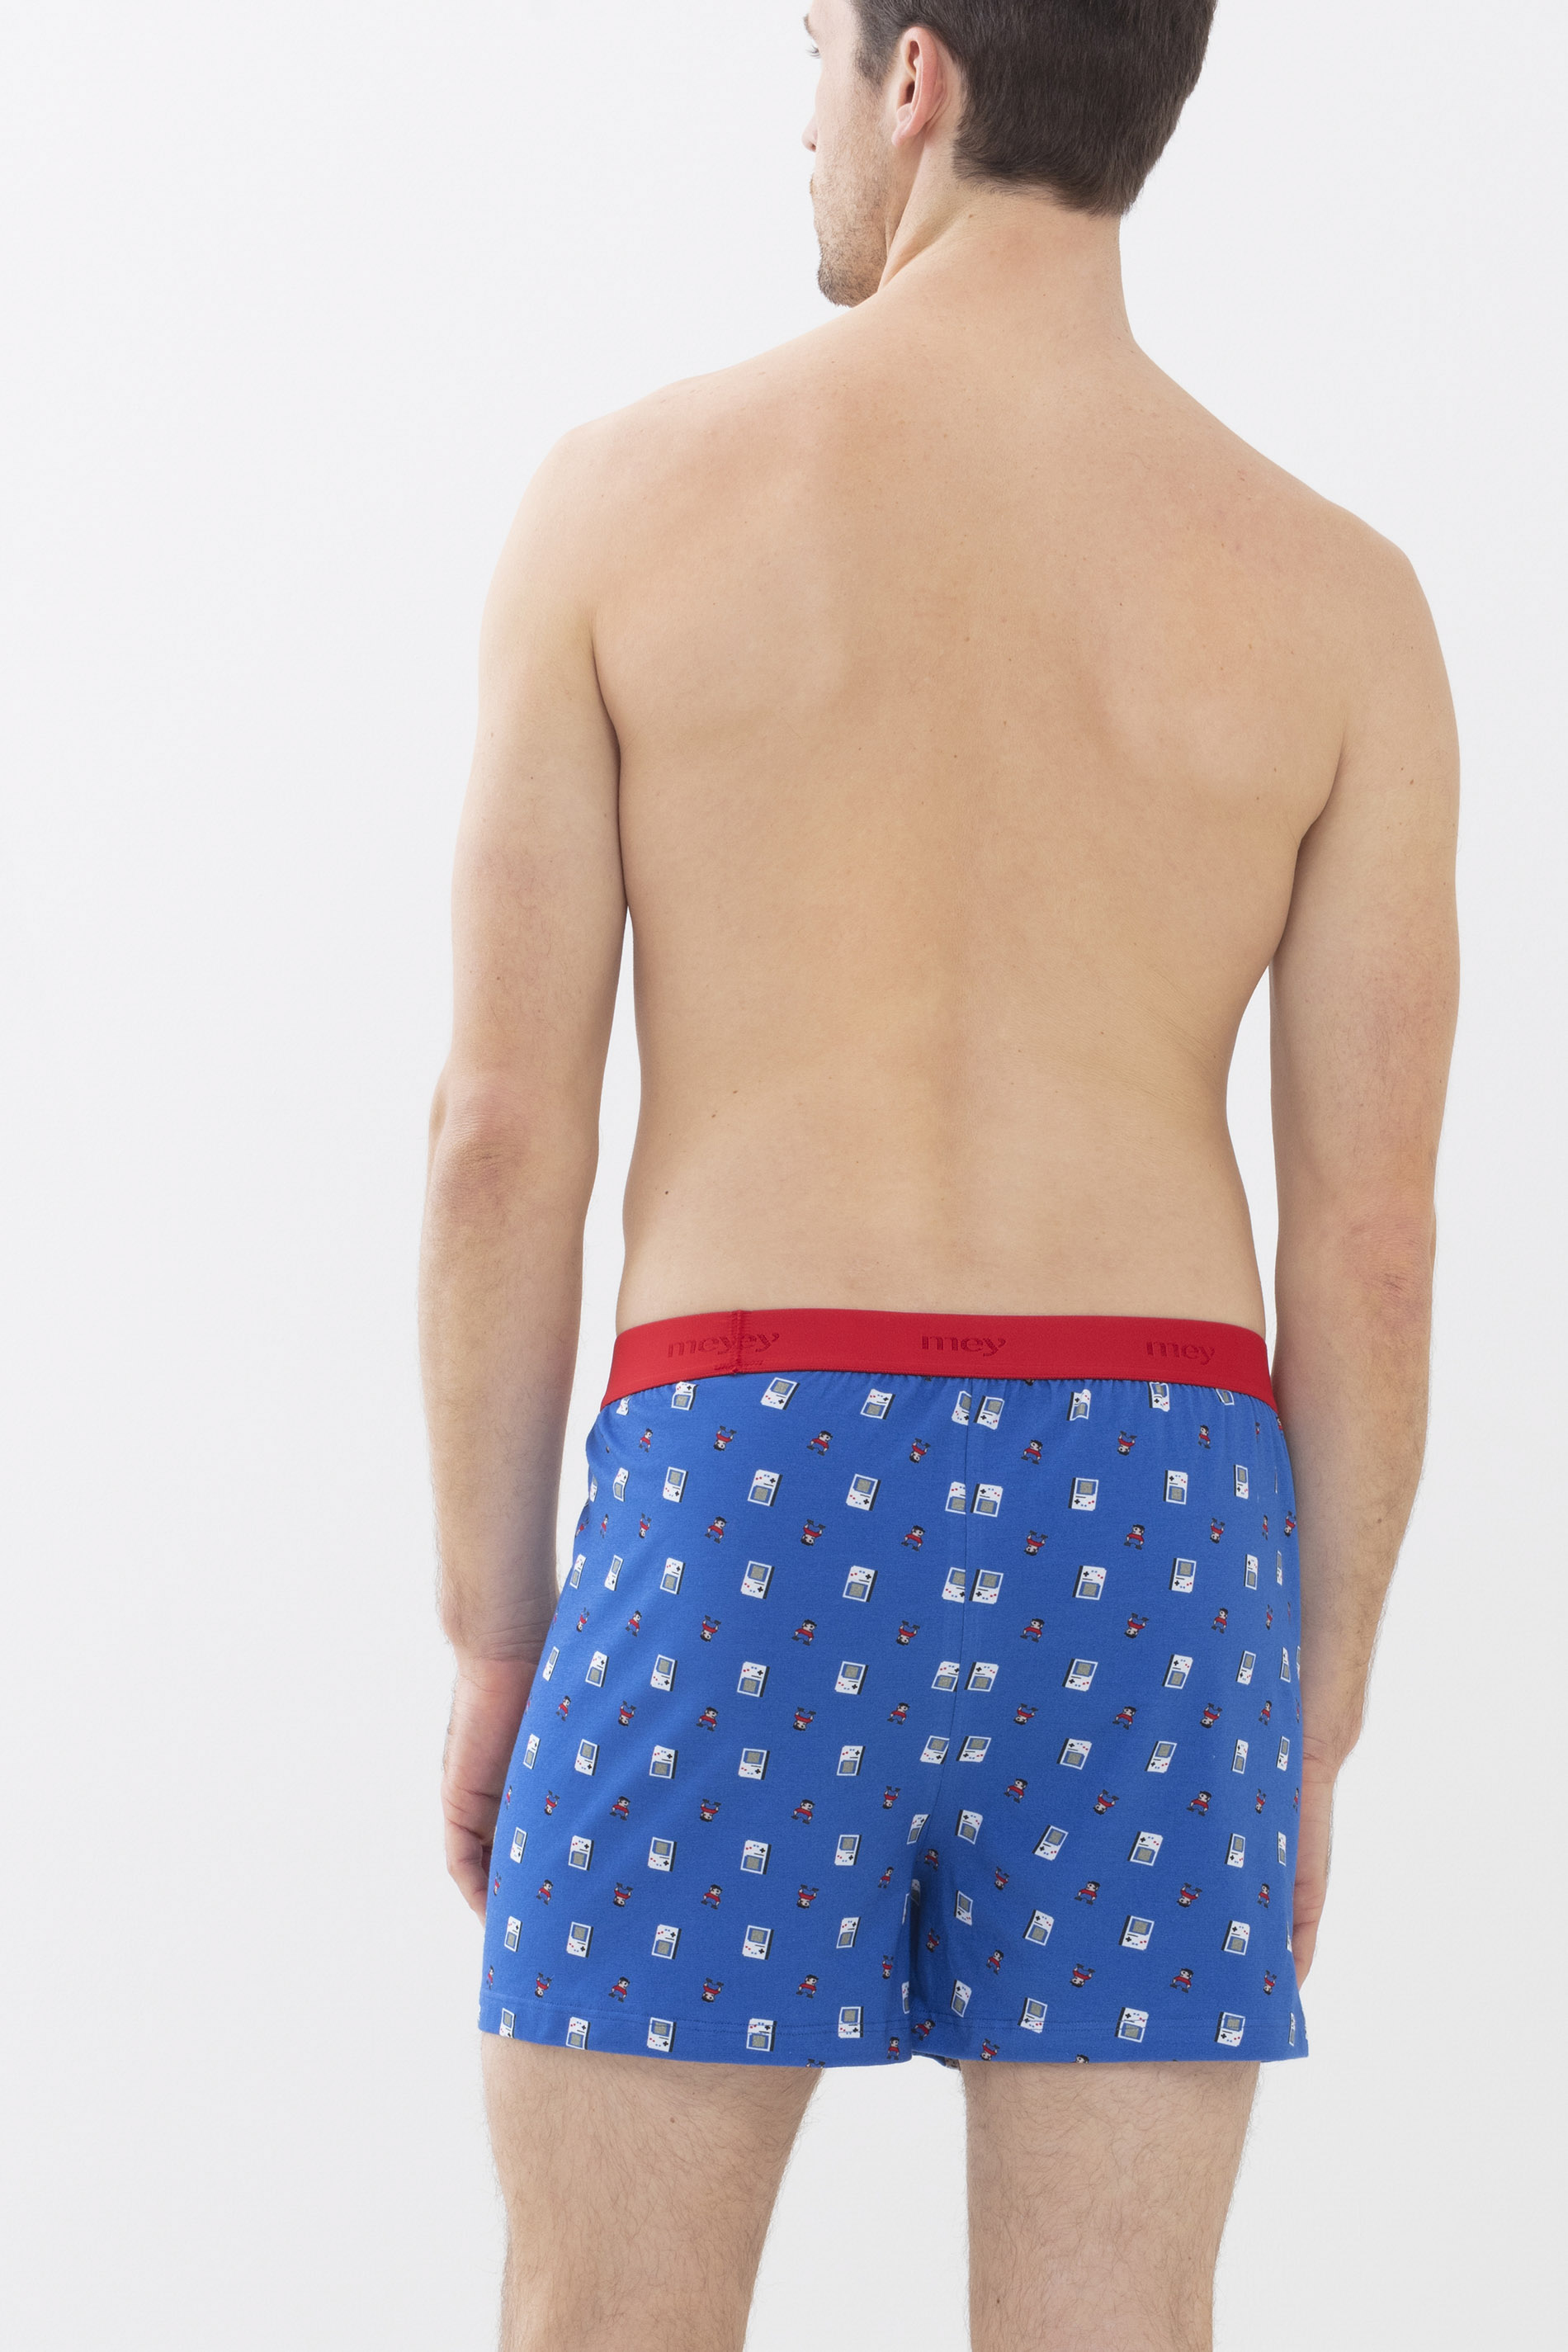 Boxer shorts Porcelain Blue Serie RE:THINK 8 BIT Rear View | mey®